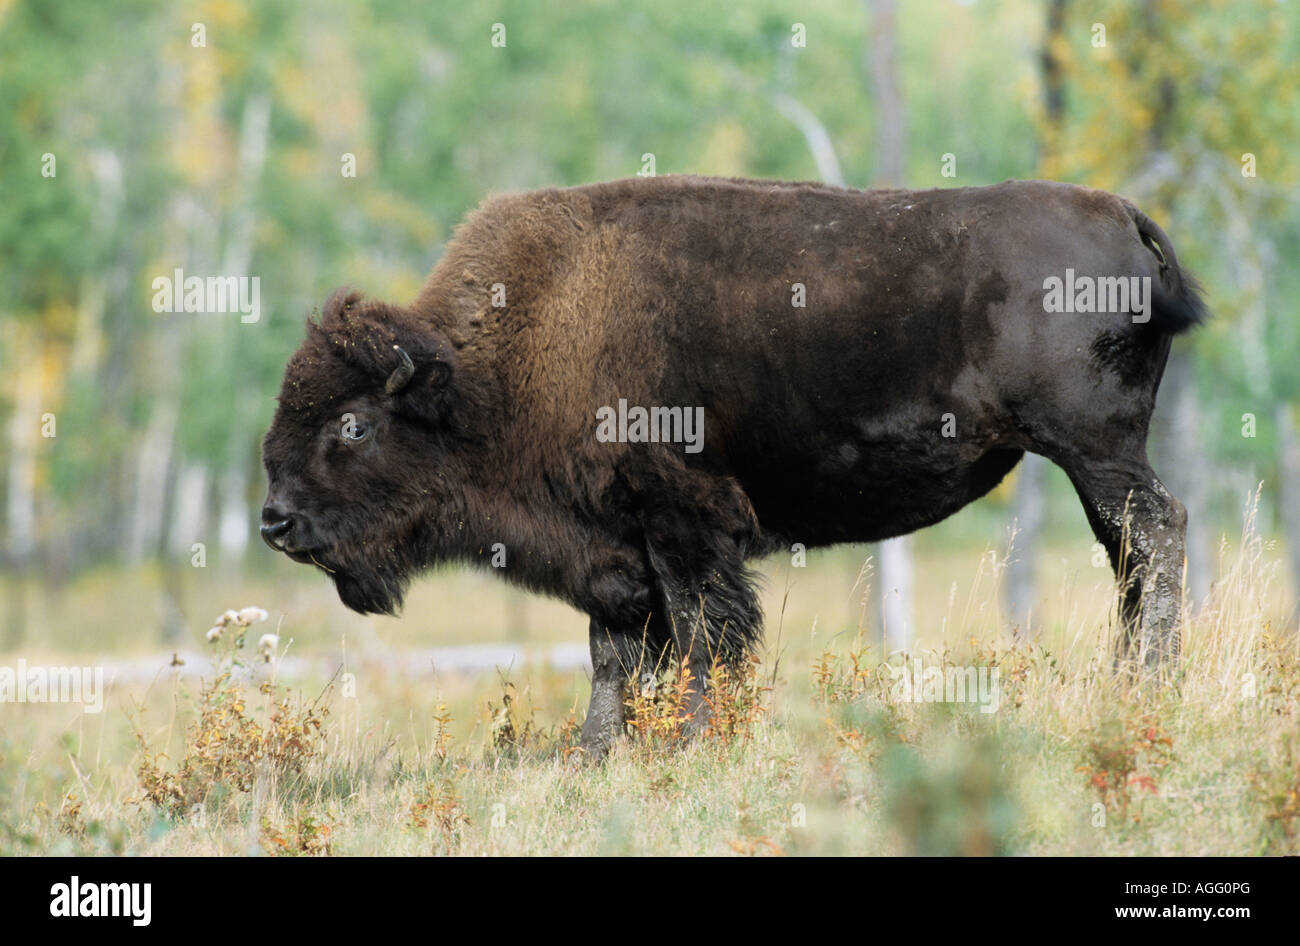 Bison Bison bison Portrait einer Bisonkuh American Buffalo Bison potrait of Bison cow Stock Photo